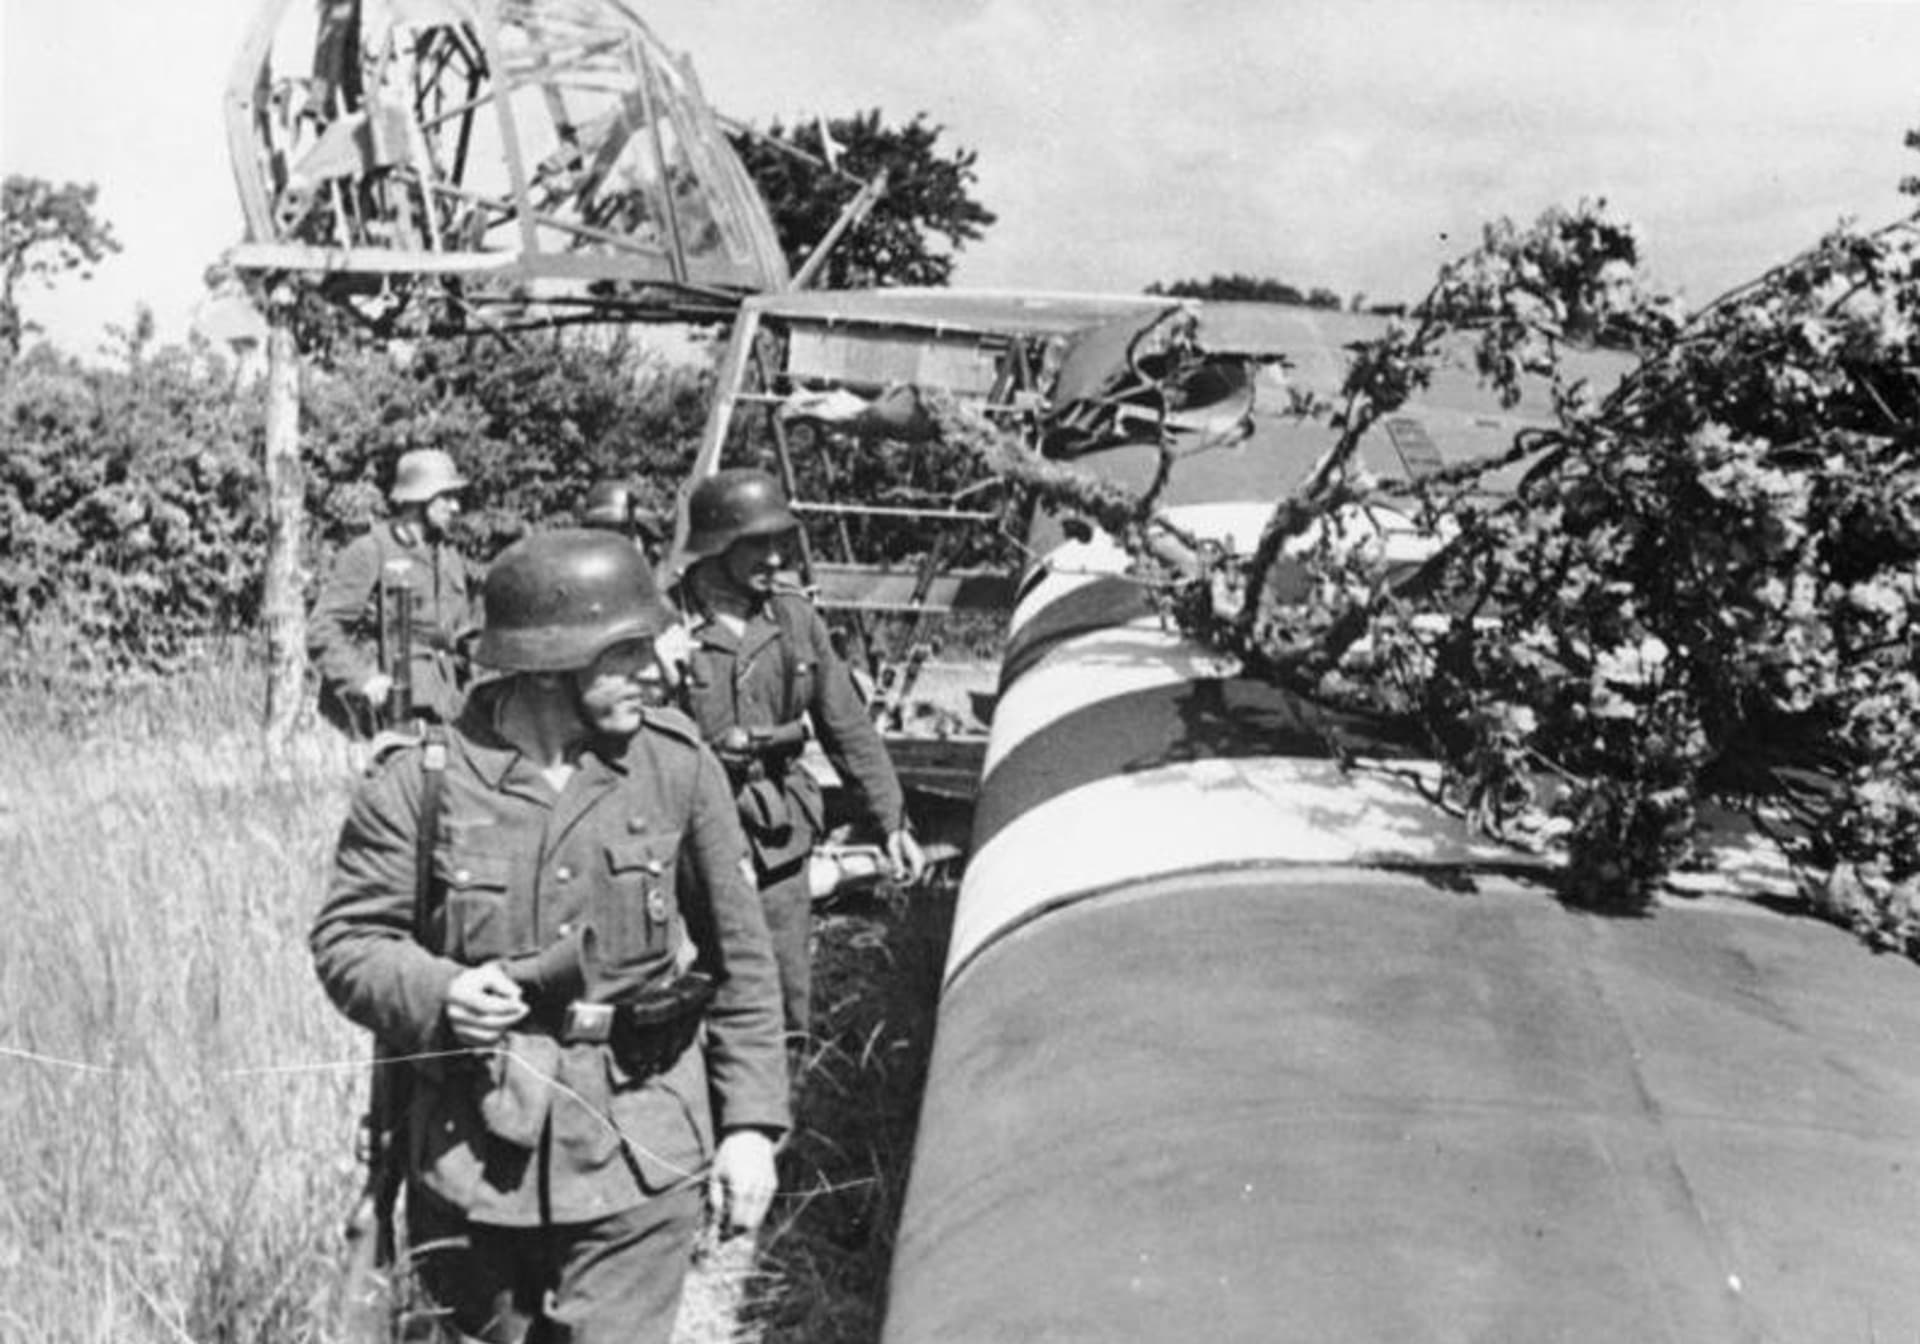 Němečtí vojáci prohlížejí opuštěný kluzák typu Waco CG-4